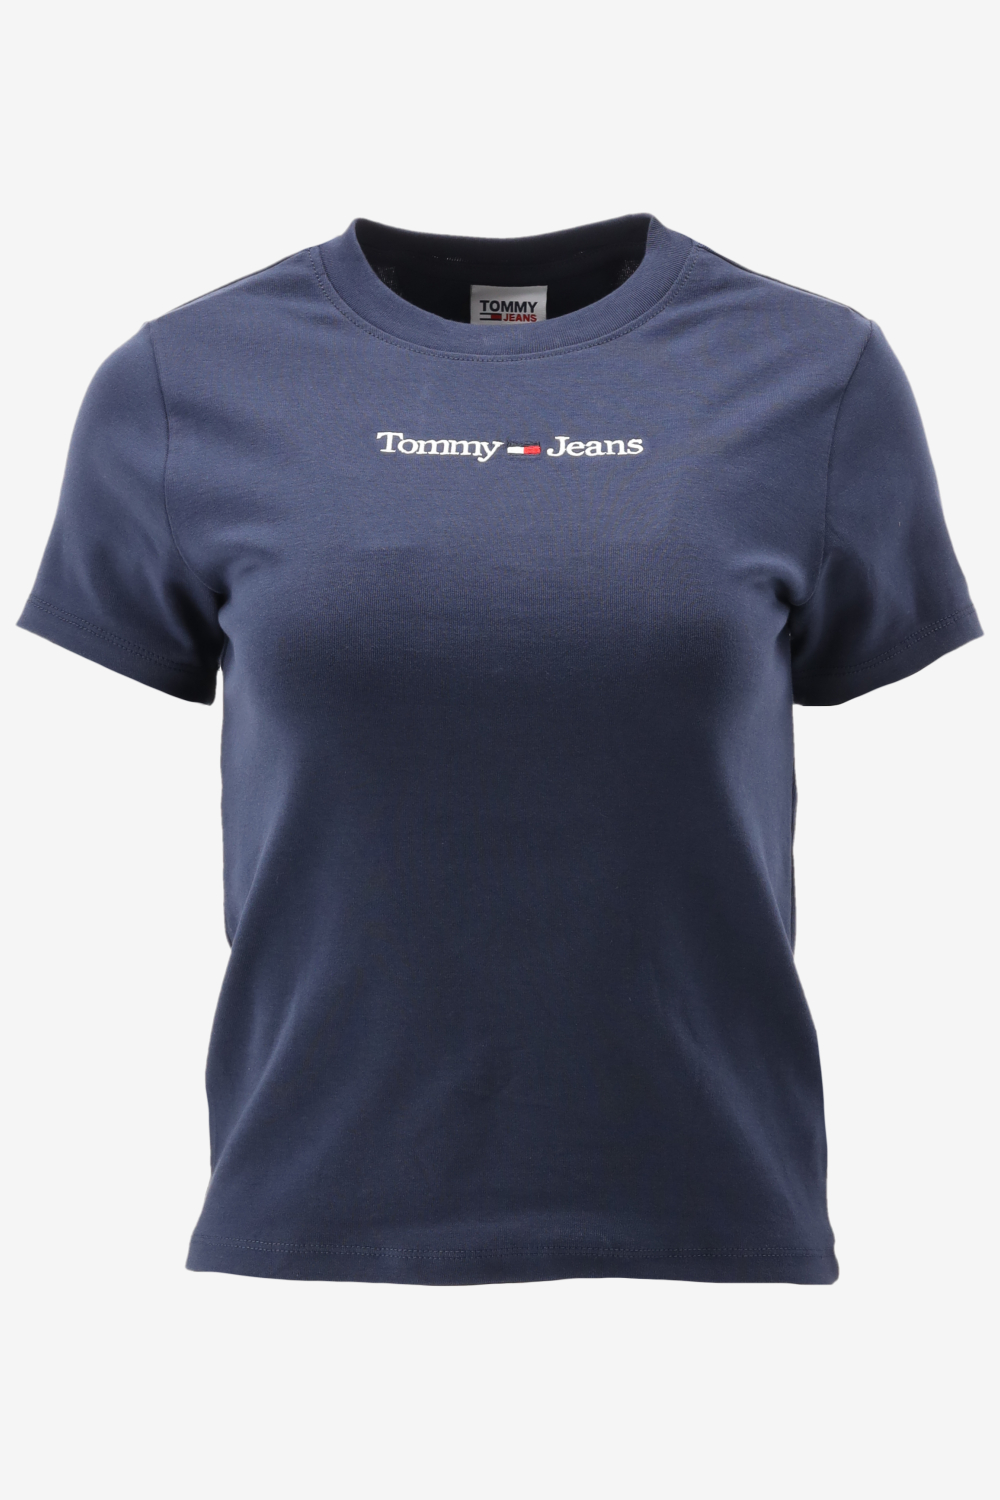 Tommy Hilfiger TJW BABY SERIF LINEAR SS Dames T-shirt - Blauw - Maat M